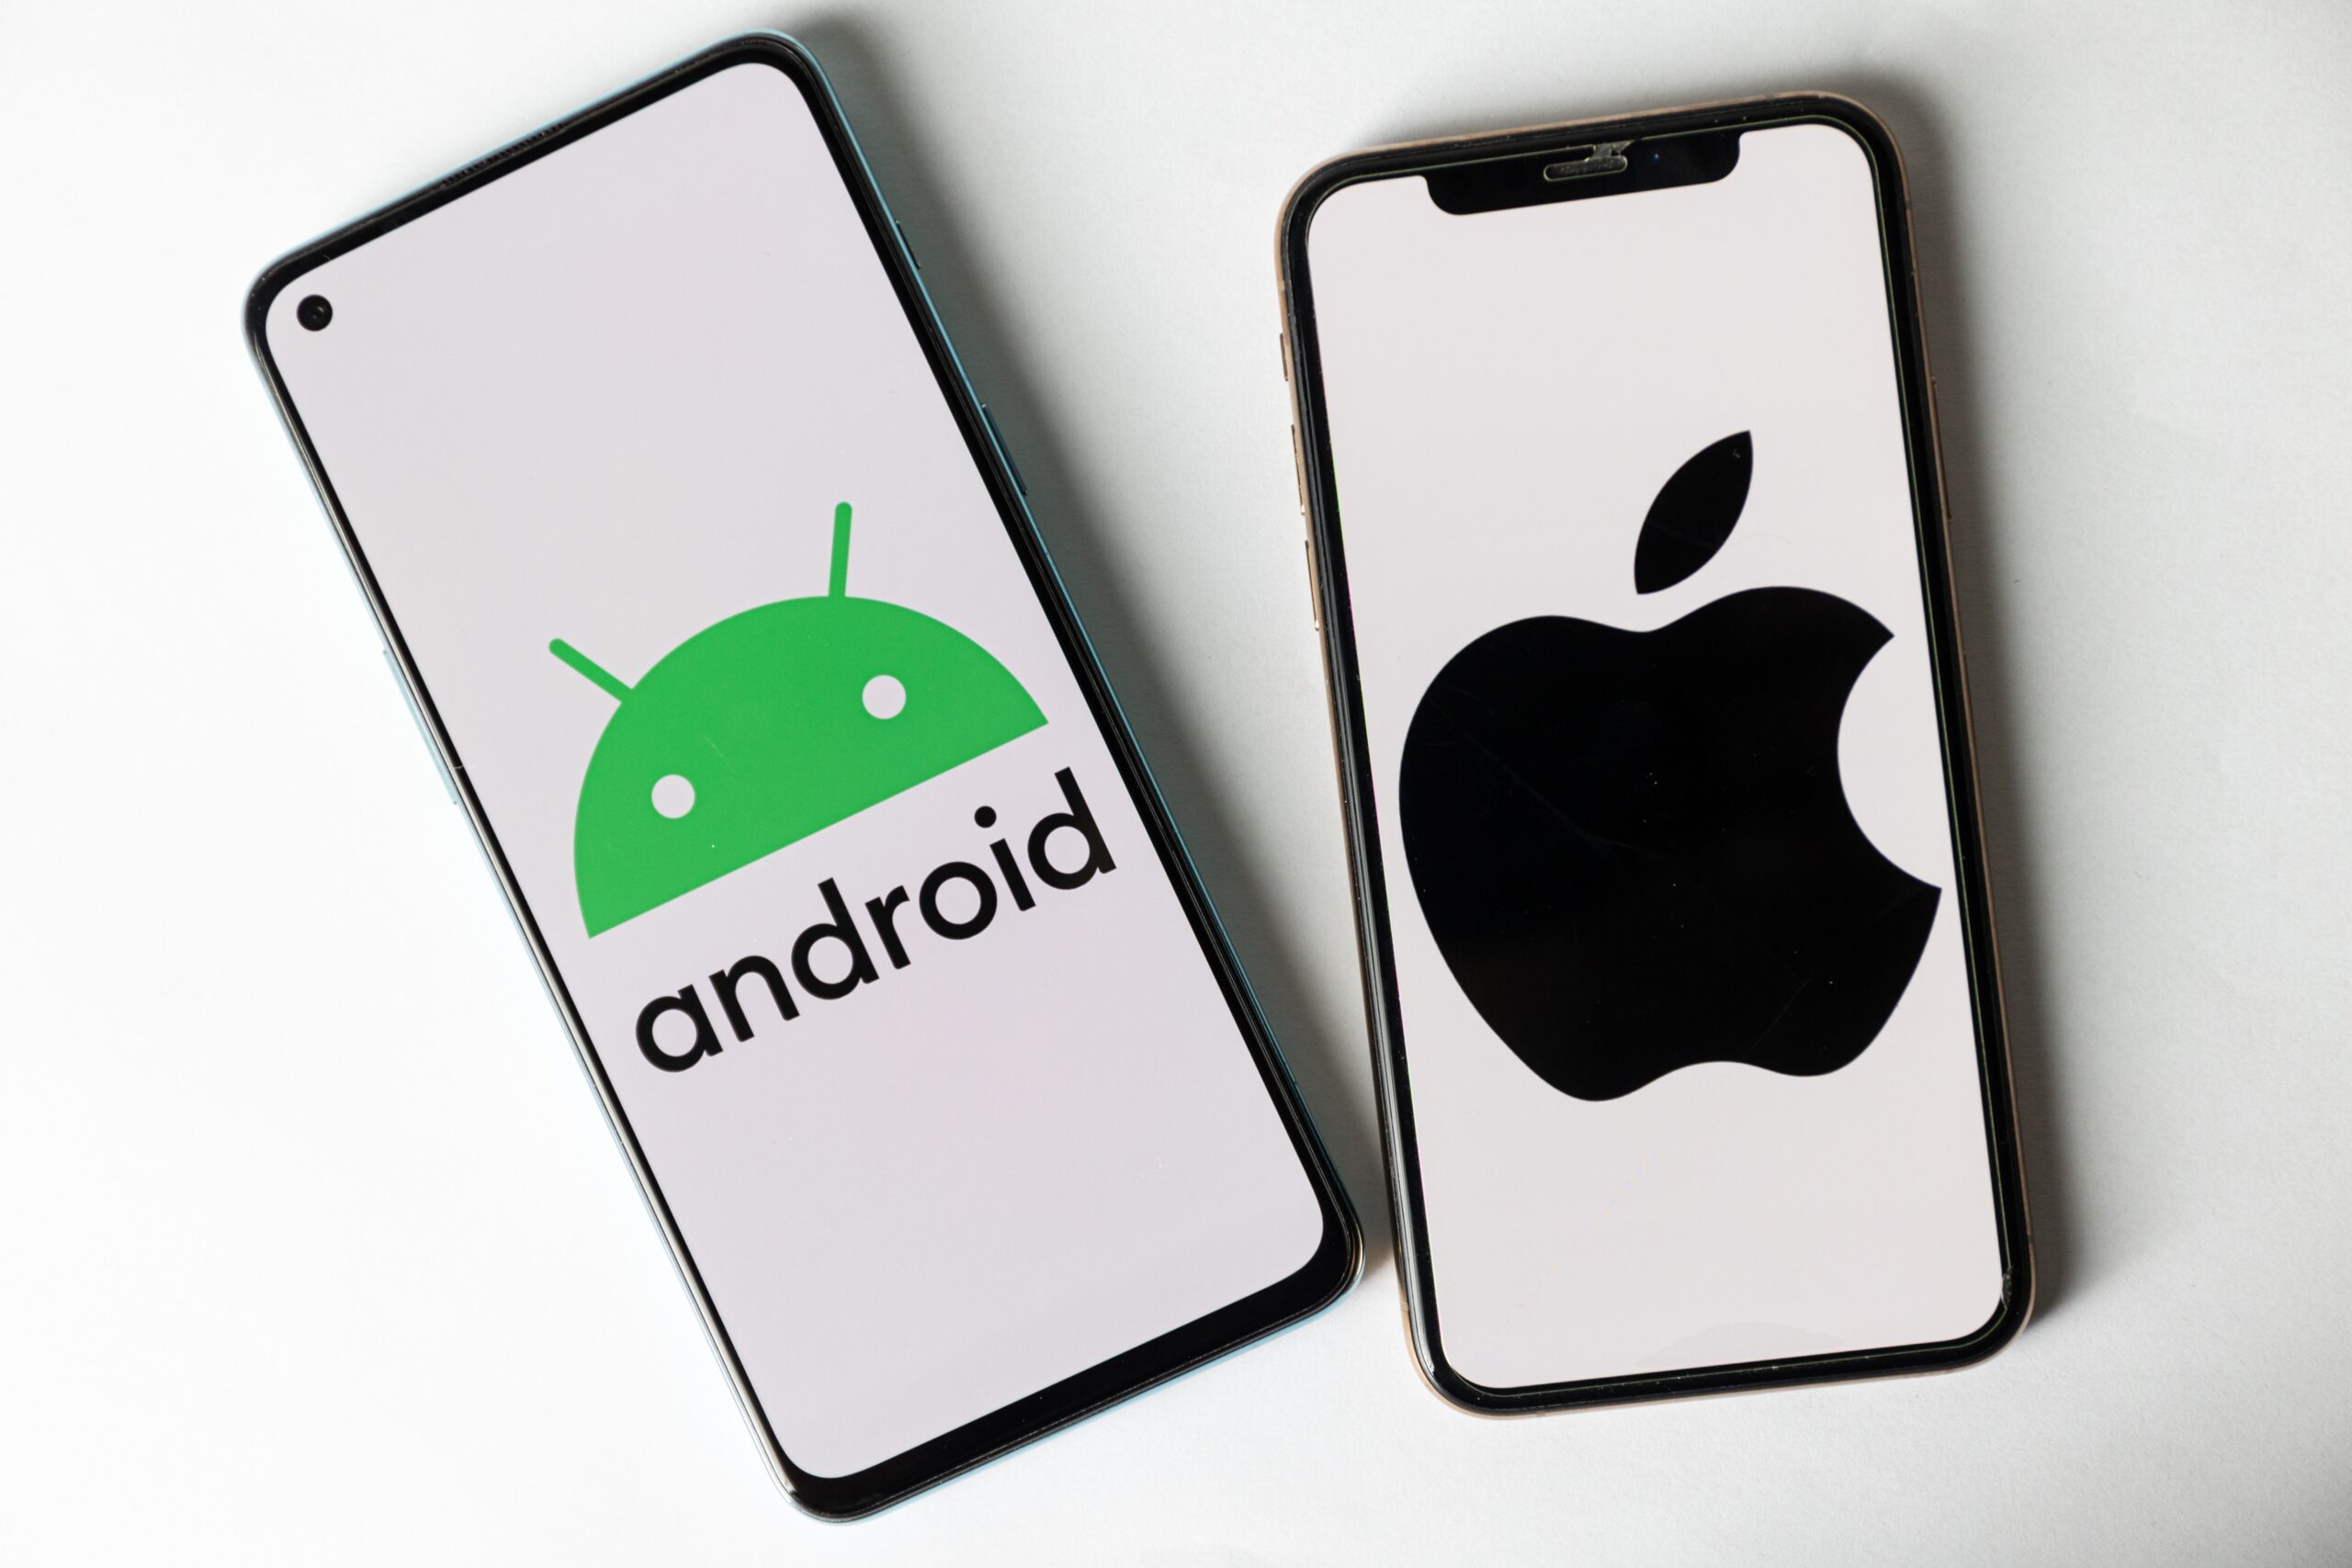 Imagem mostra o Android (Google) ao lado de um smartphone com iOS (Apple)